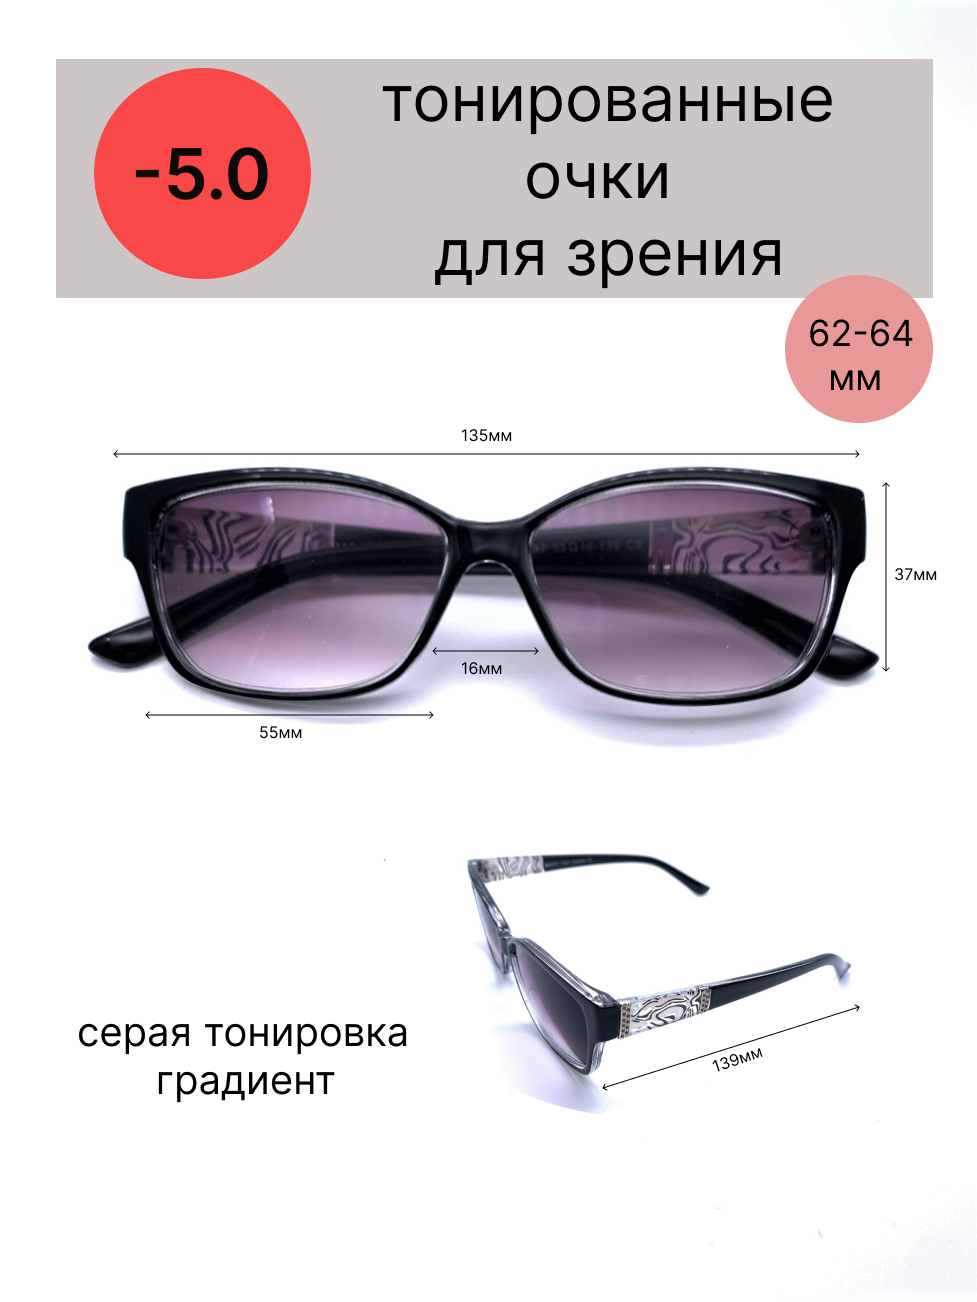 Тонированные очки с диоптриями -5.0